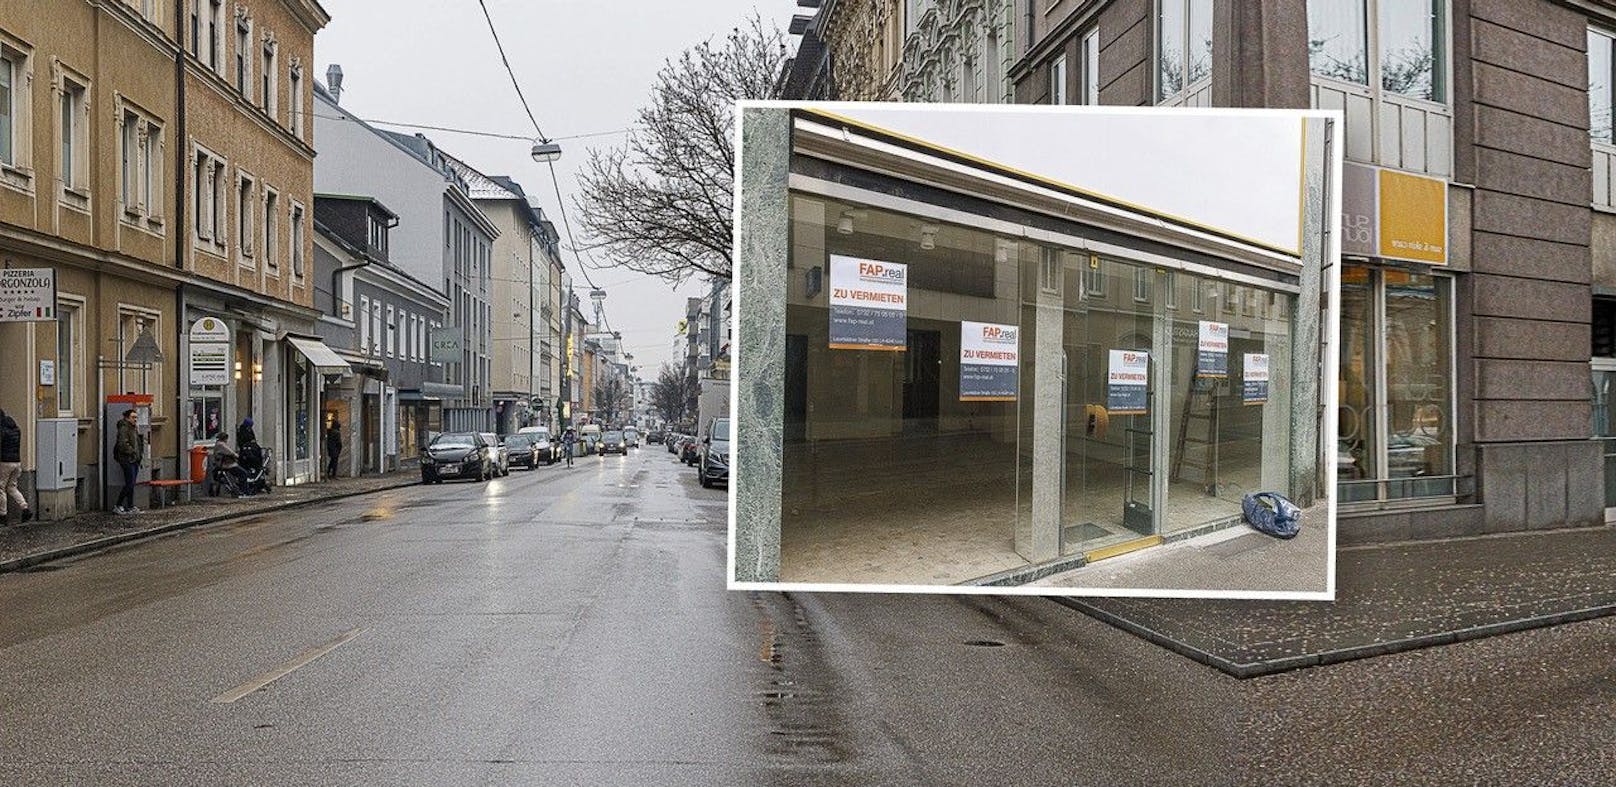 "Zu vermieten": Bei einem <em>"Heute"</em>-Rundgang in einer Linzer Einkaufsstraße wurden viele unbesetzte Lokale entdeckt.